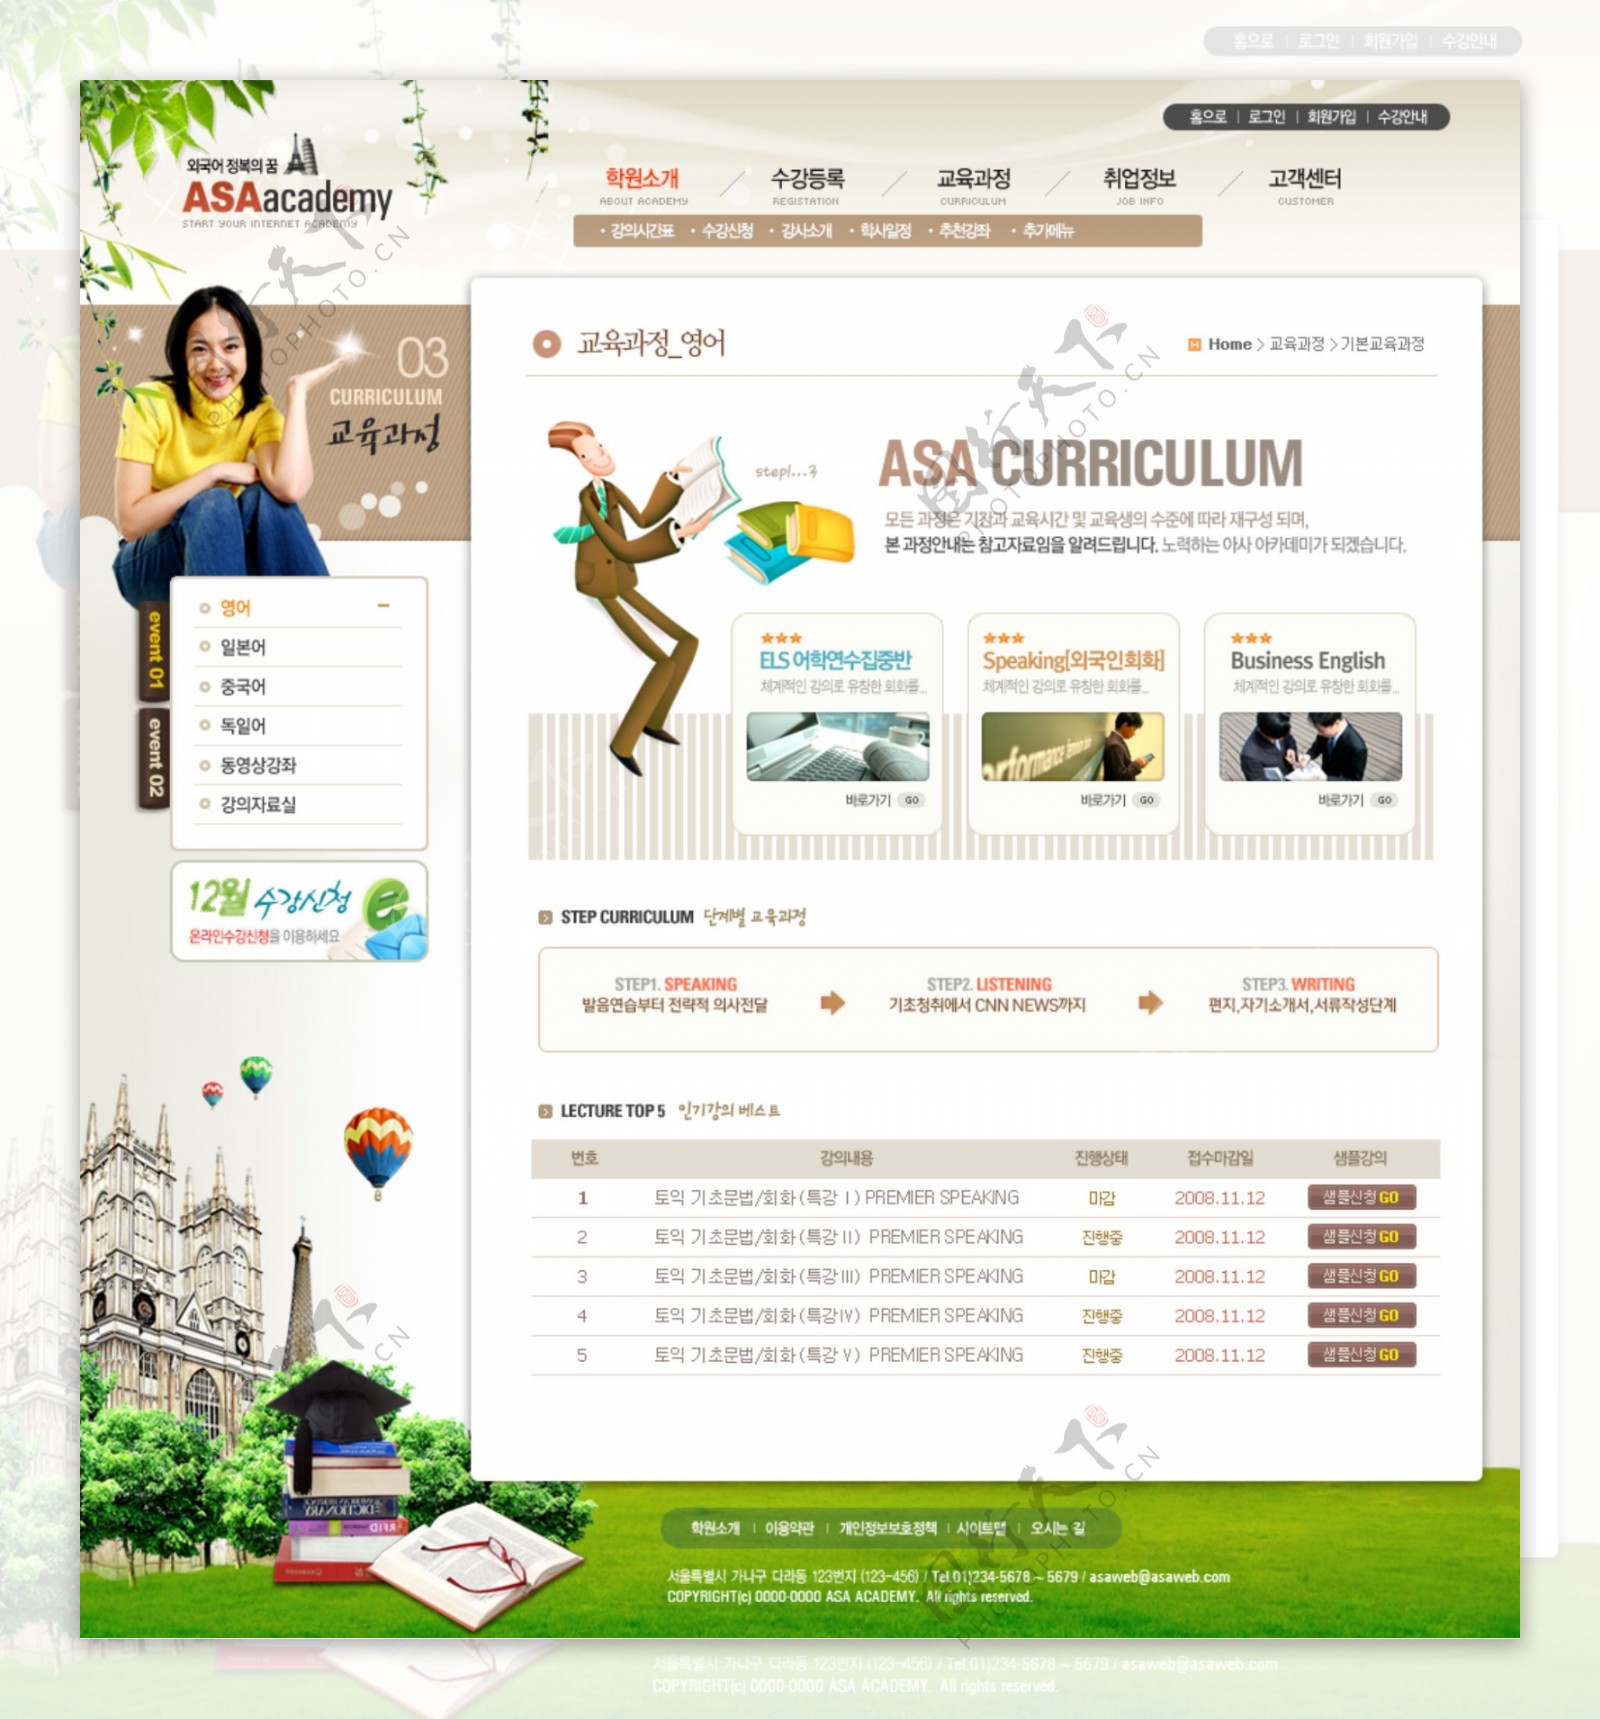 绿色企业个人网页模版PSD分层网页模版